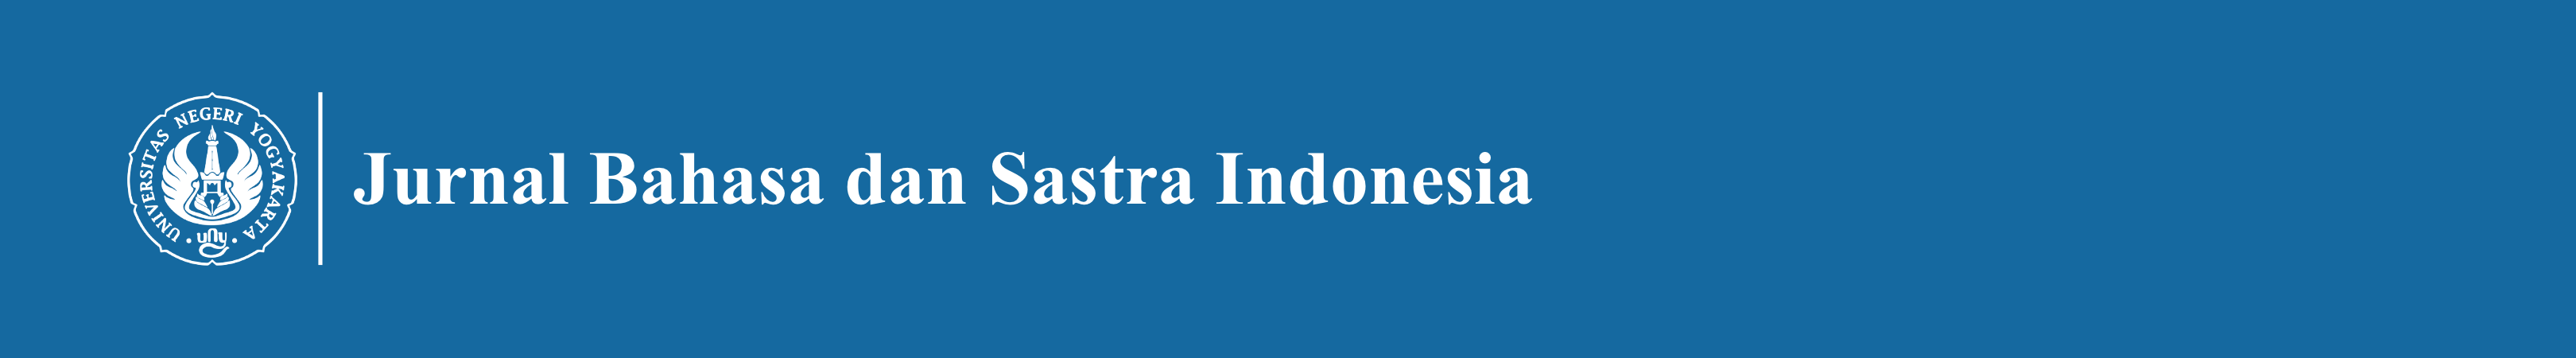 Jurnal Bahasa dan Sastra Indonesia